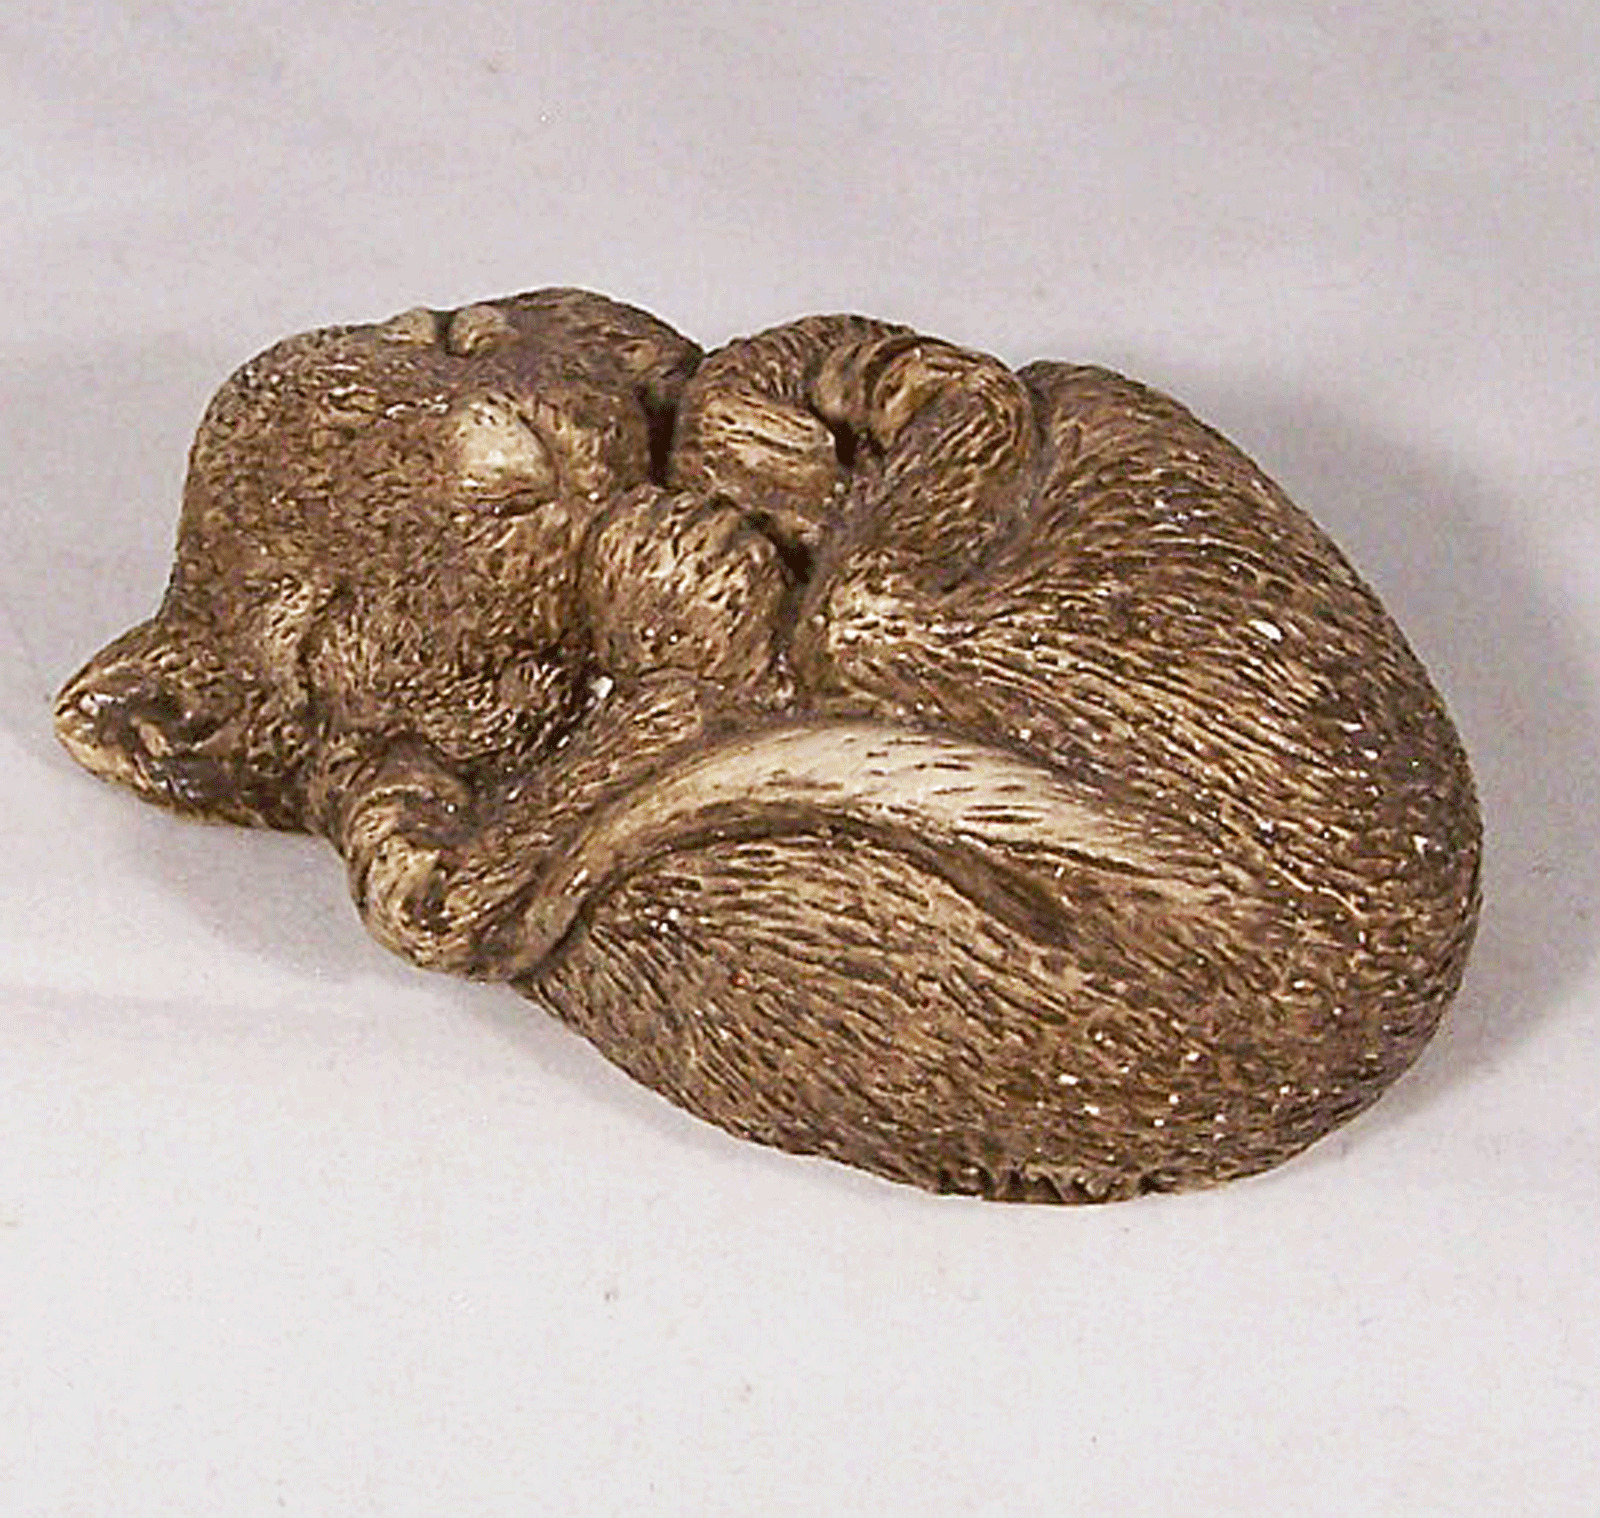 Sandicast Sleeping Mouse Larger Early Figurine Sandra Brue 1981 Vintage